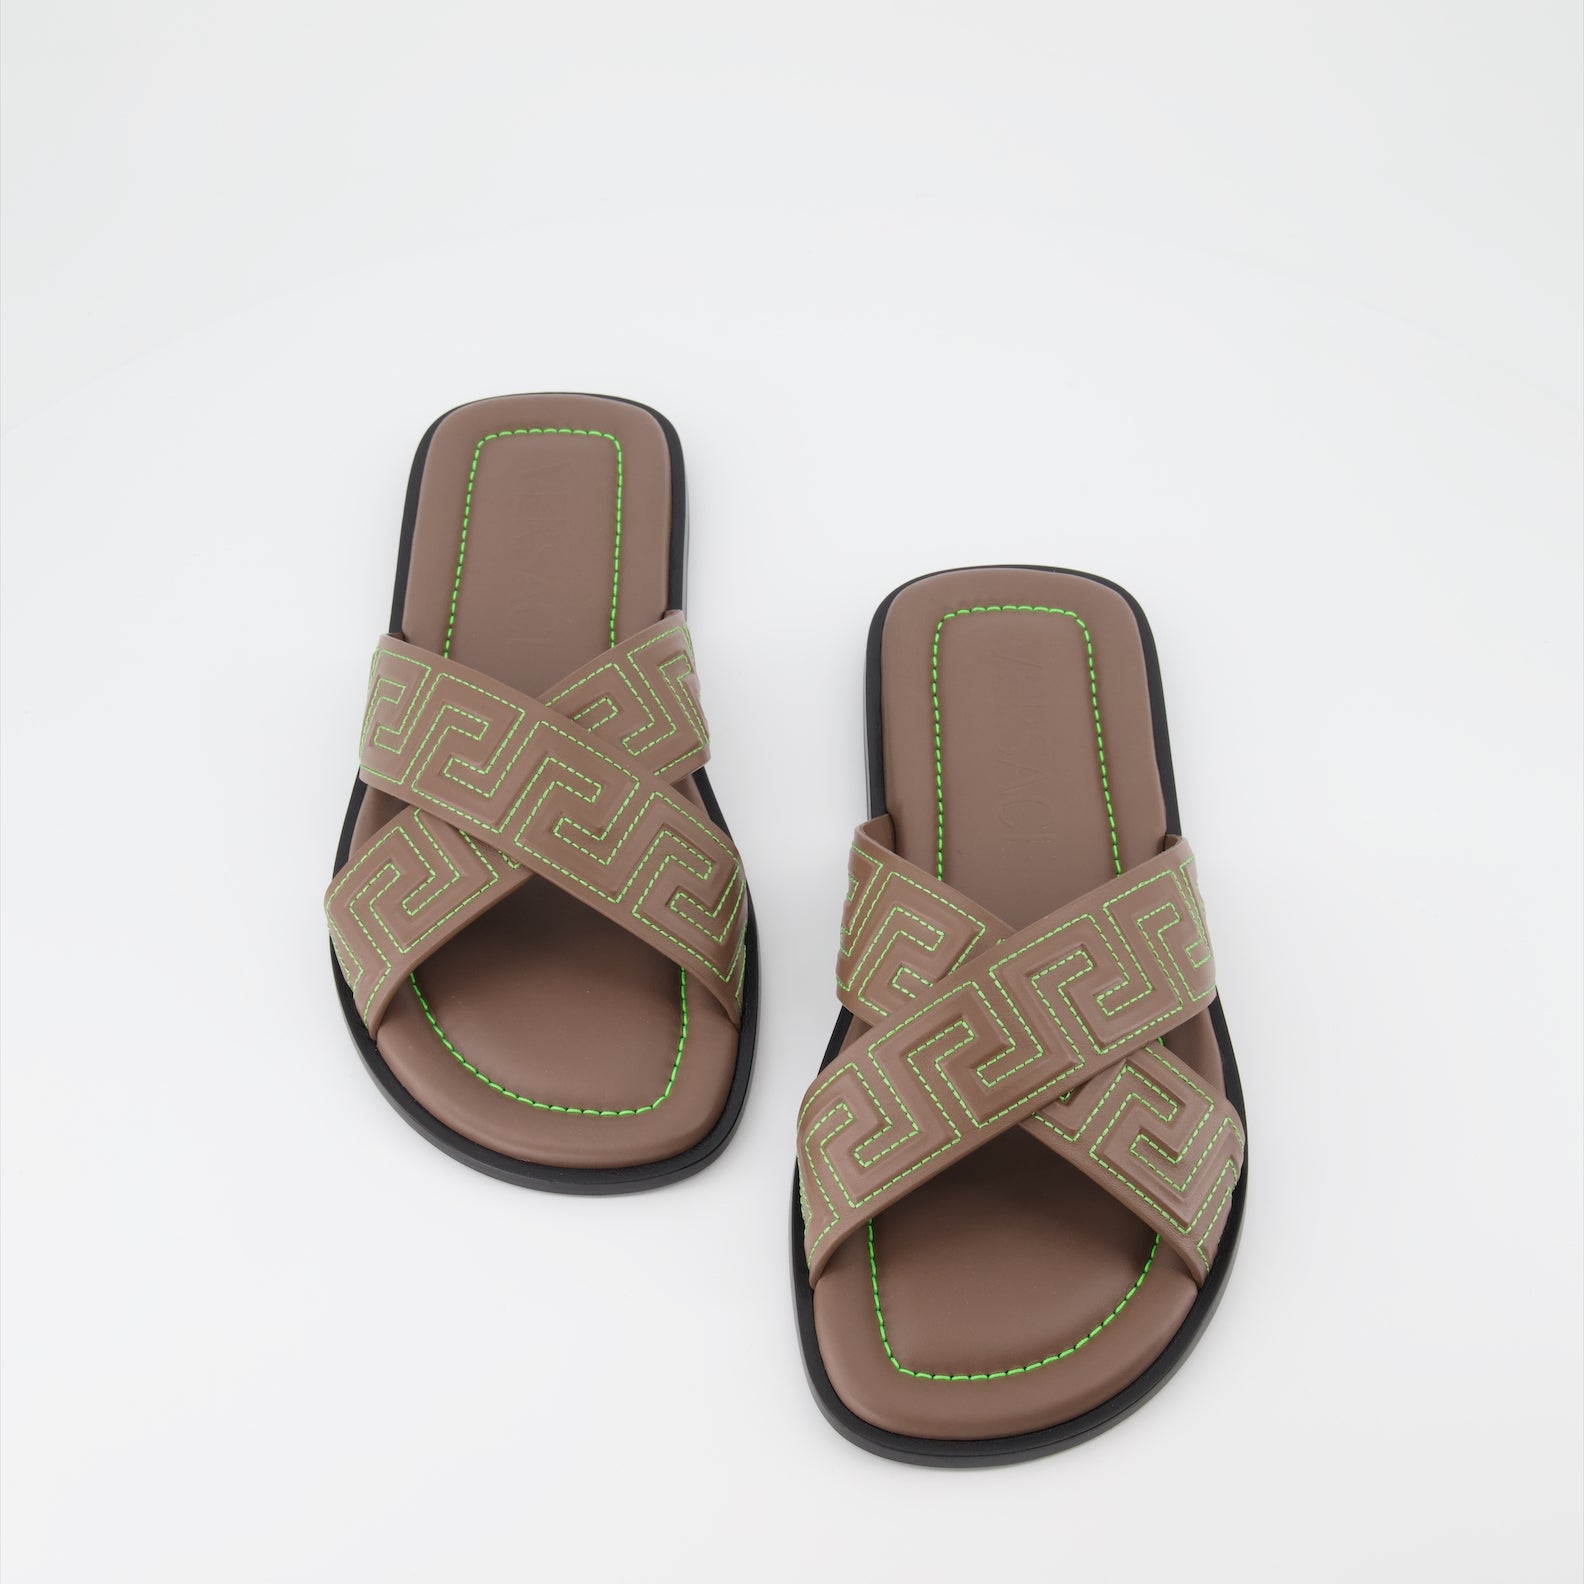 Greca sandals